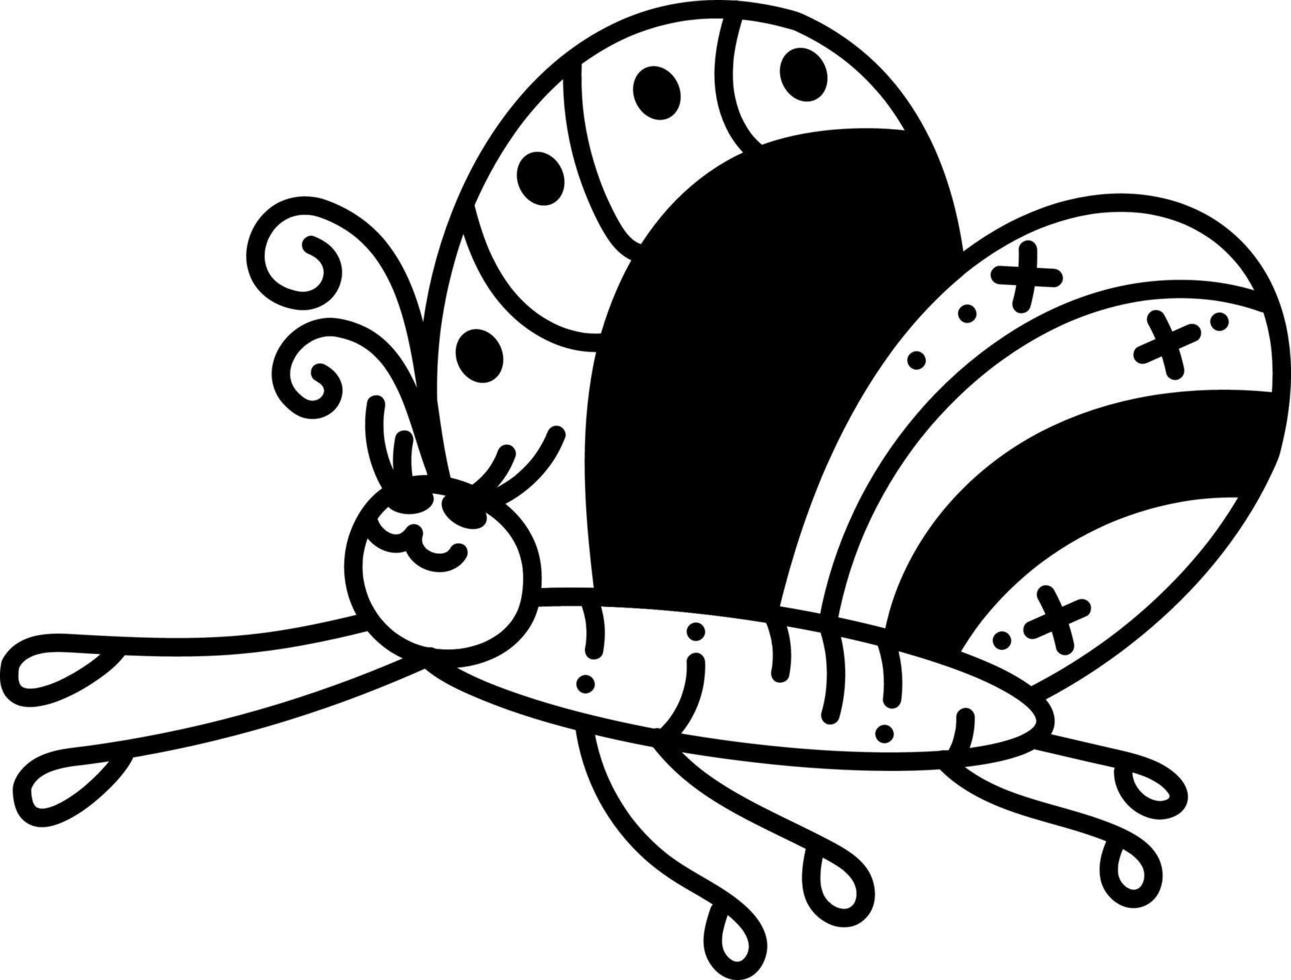 fjäril doodle5. en söt fjäril flugor till de vänster. tecknad serie vit och svart vektor illustration.